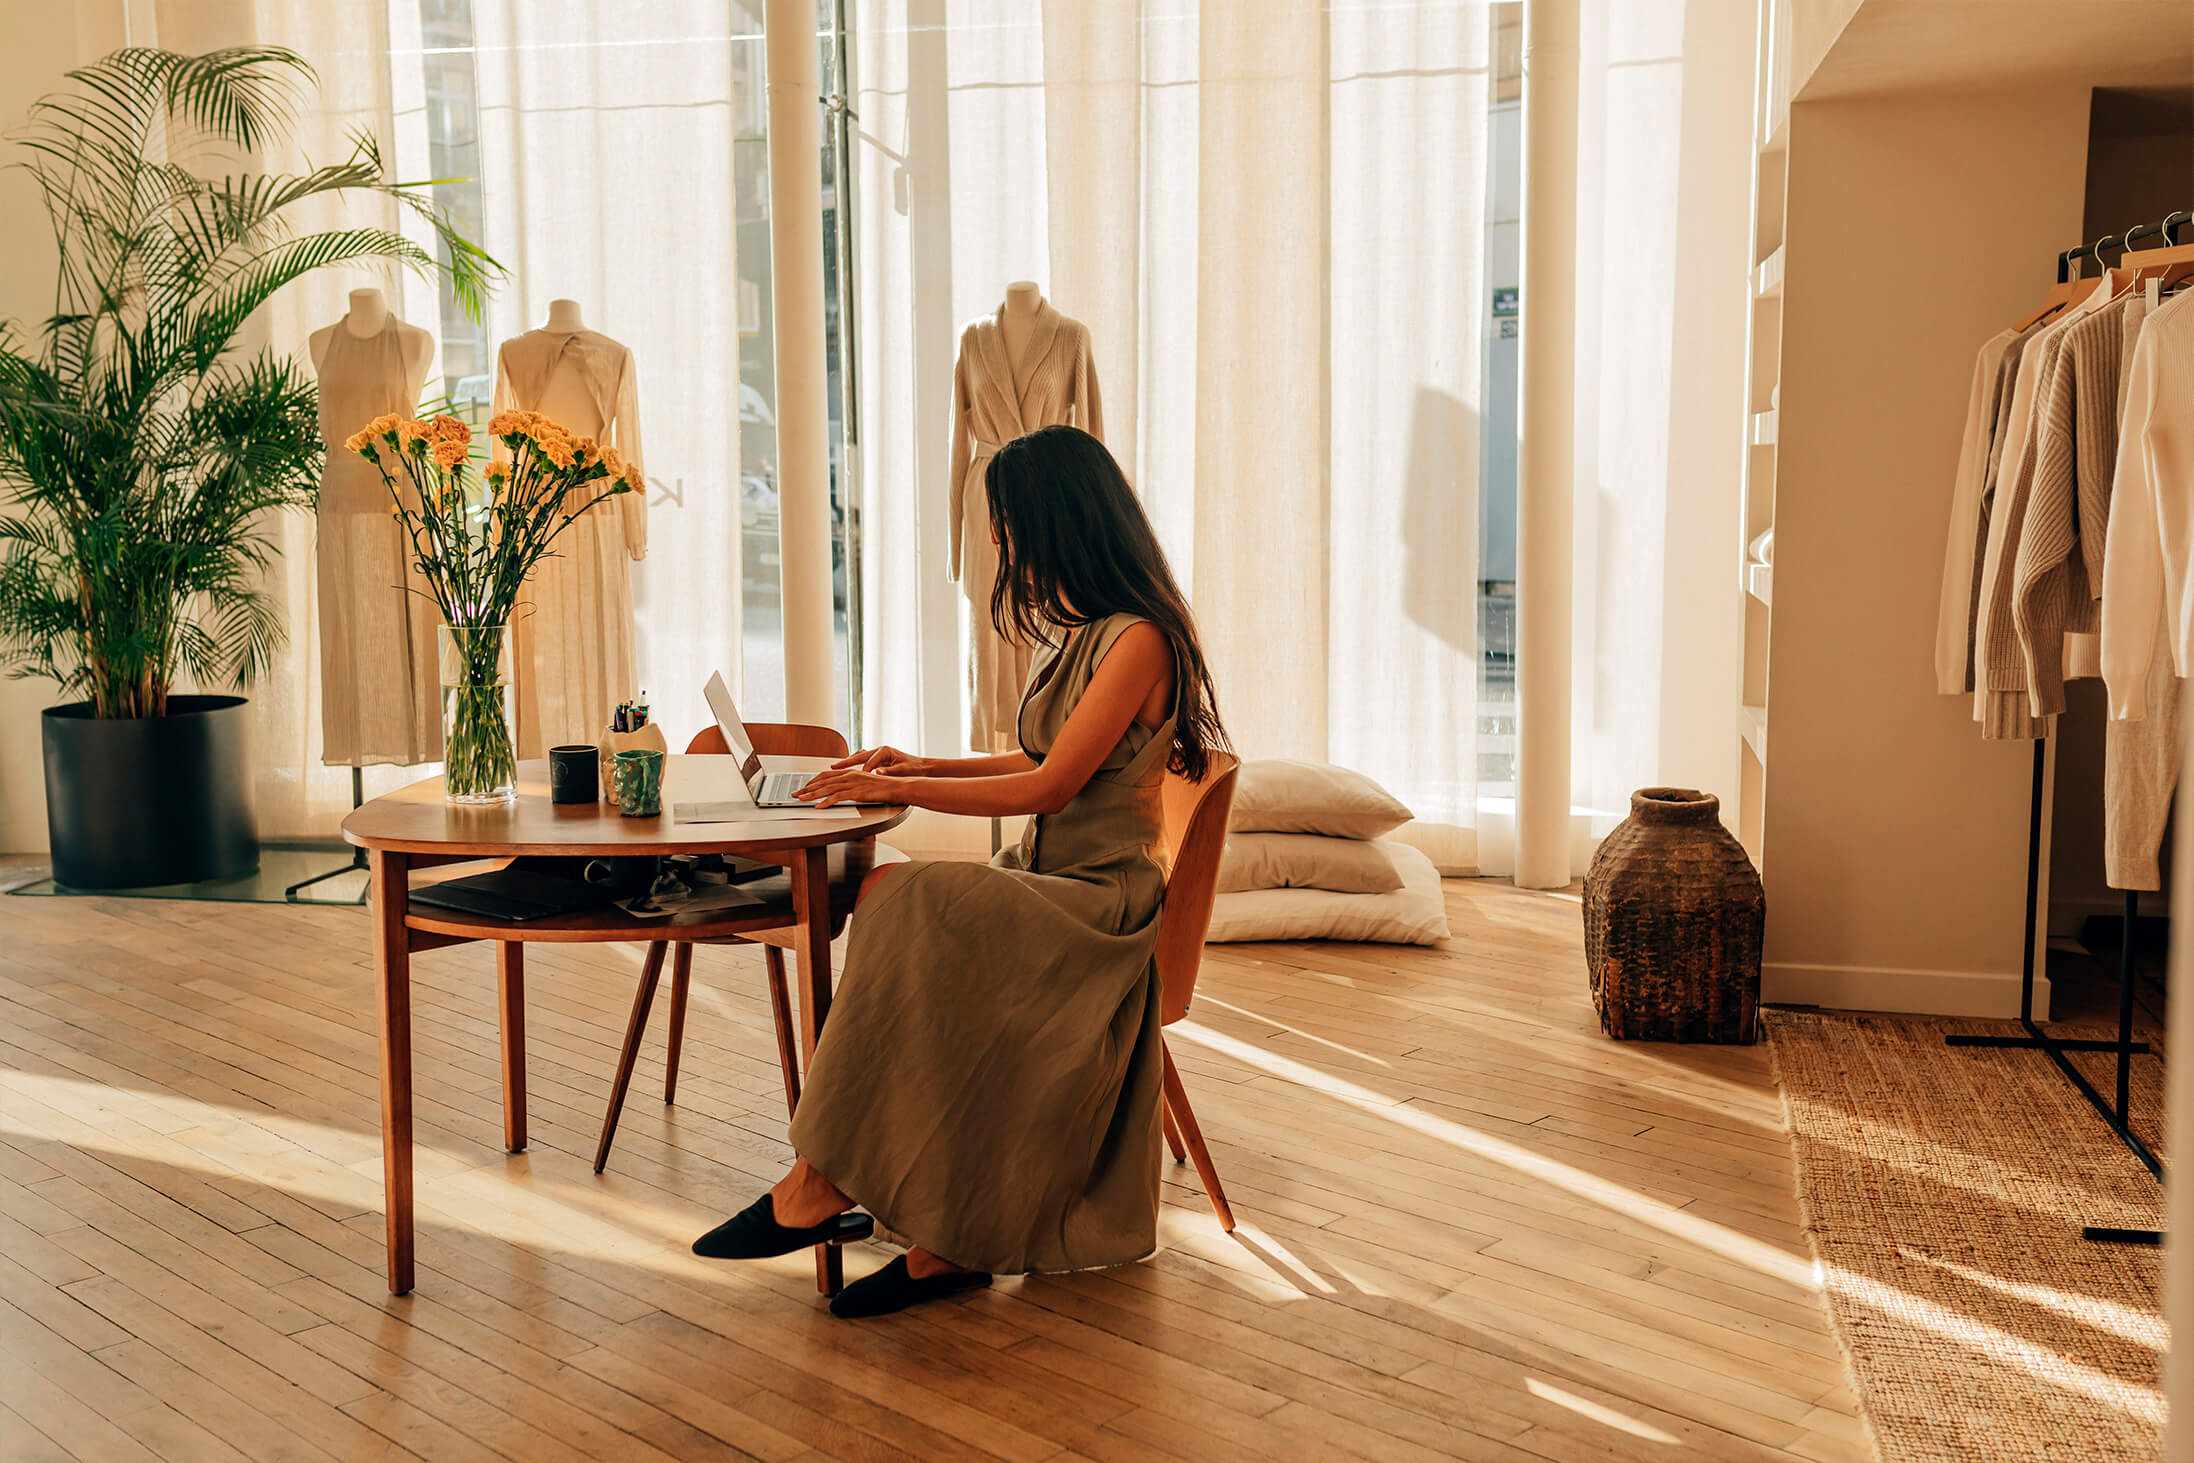 Bild des Designers von Le Kasha, der vor einem Tisch in einem warm beleuchteten Atelier sitzt.